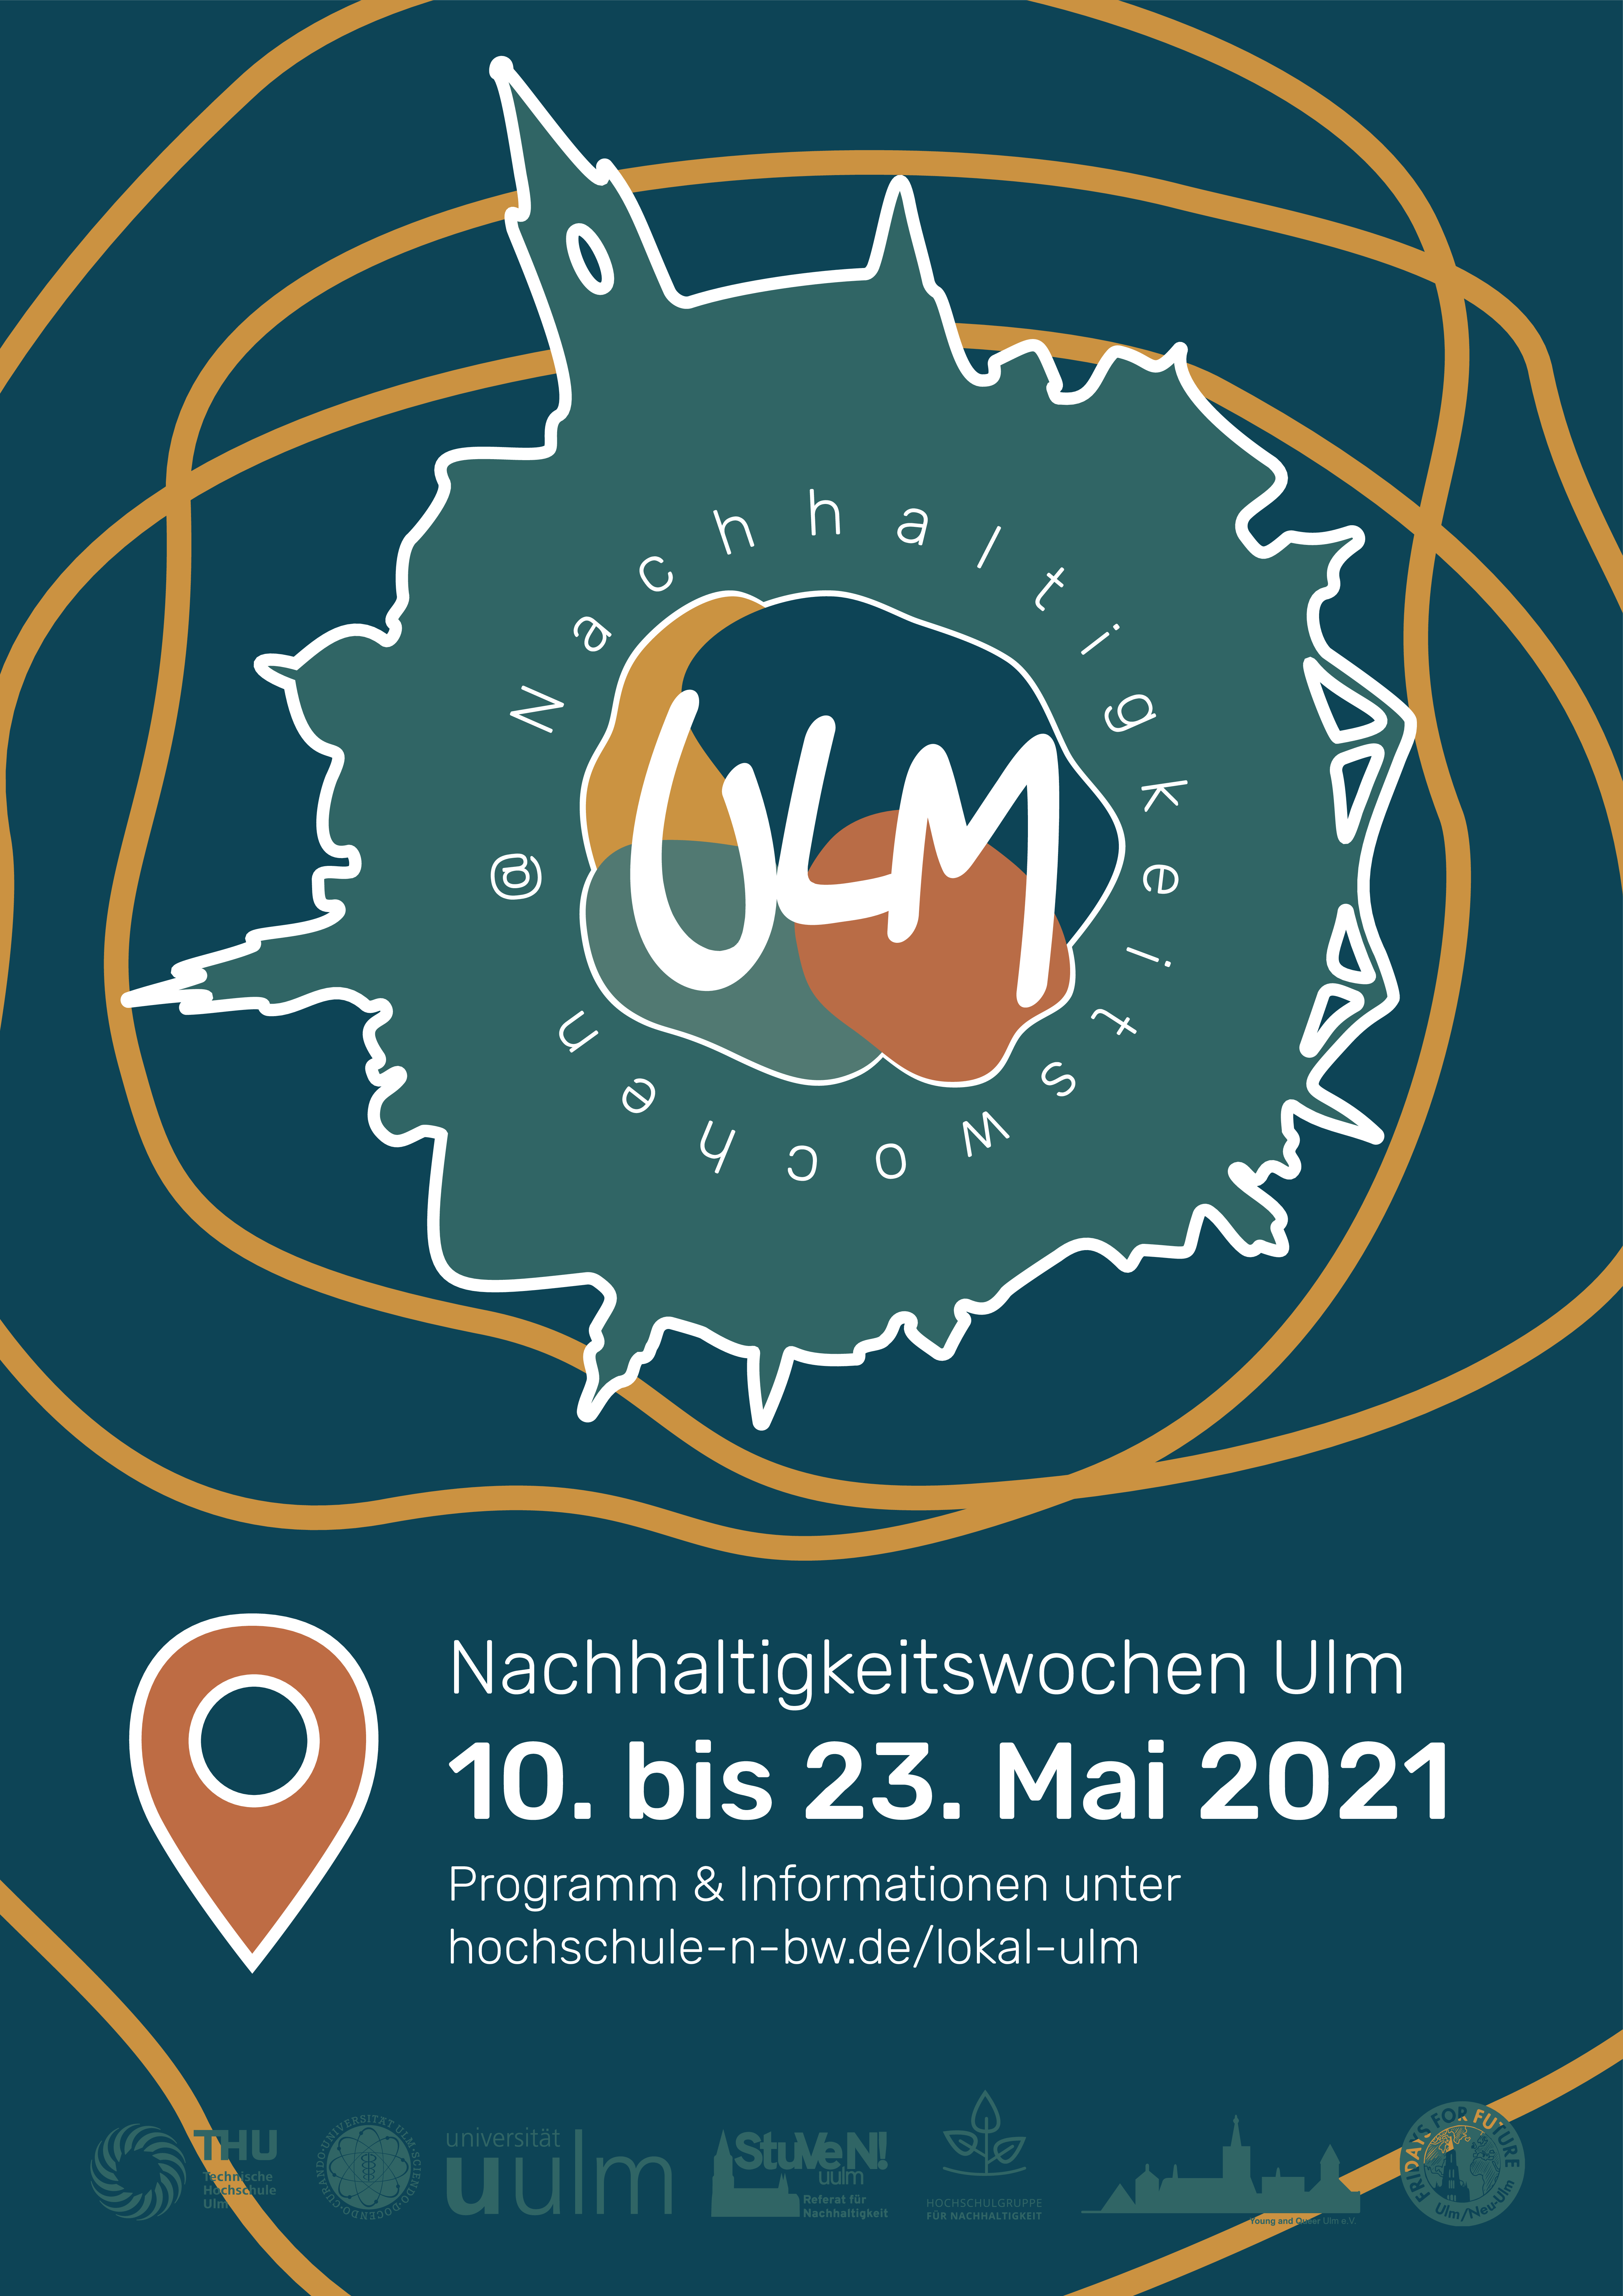 Plakat zu den Nachhaltigkeitswochen Ulm